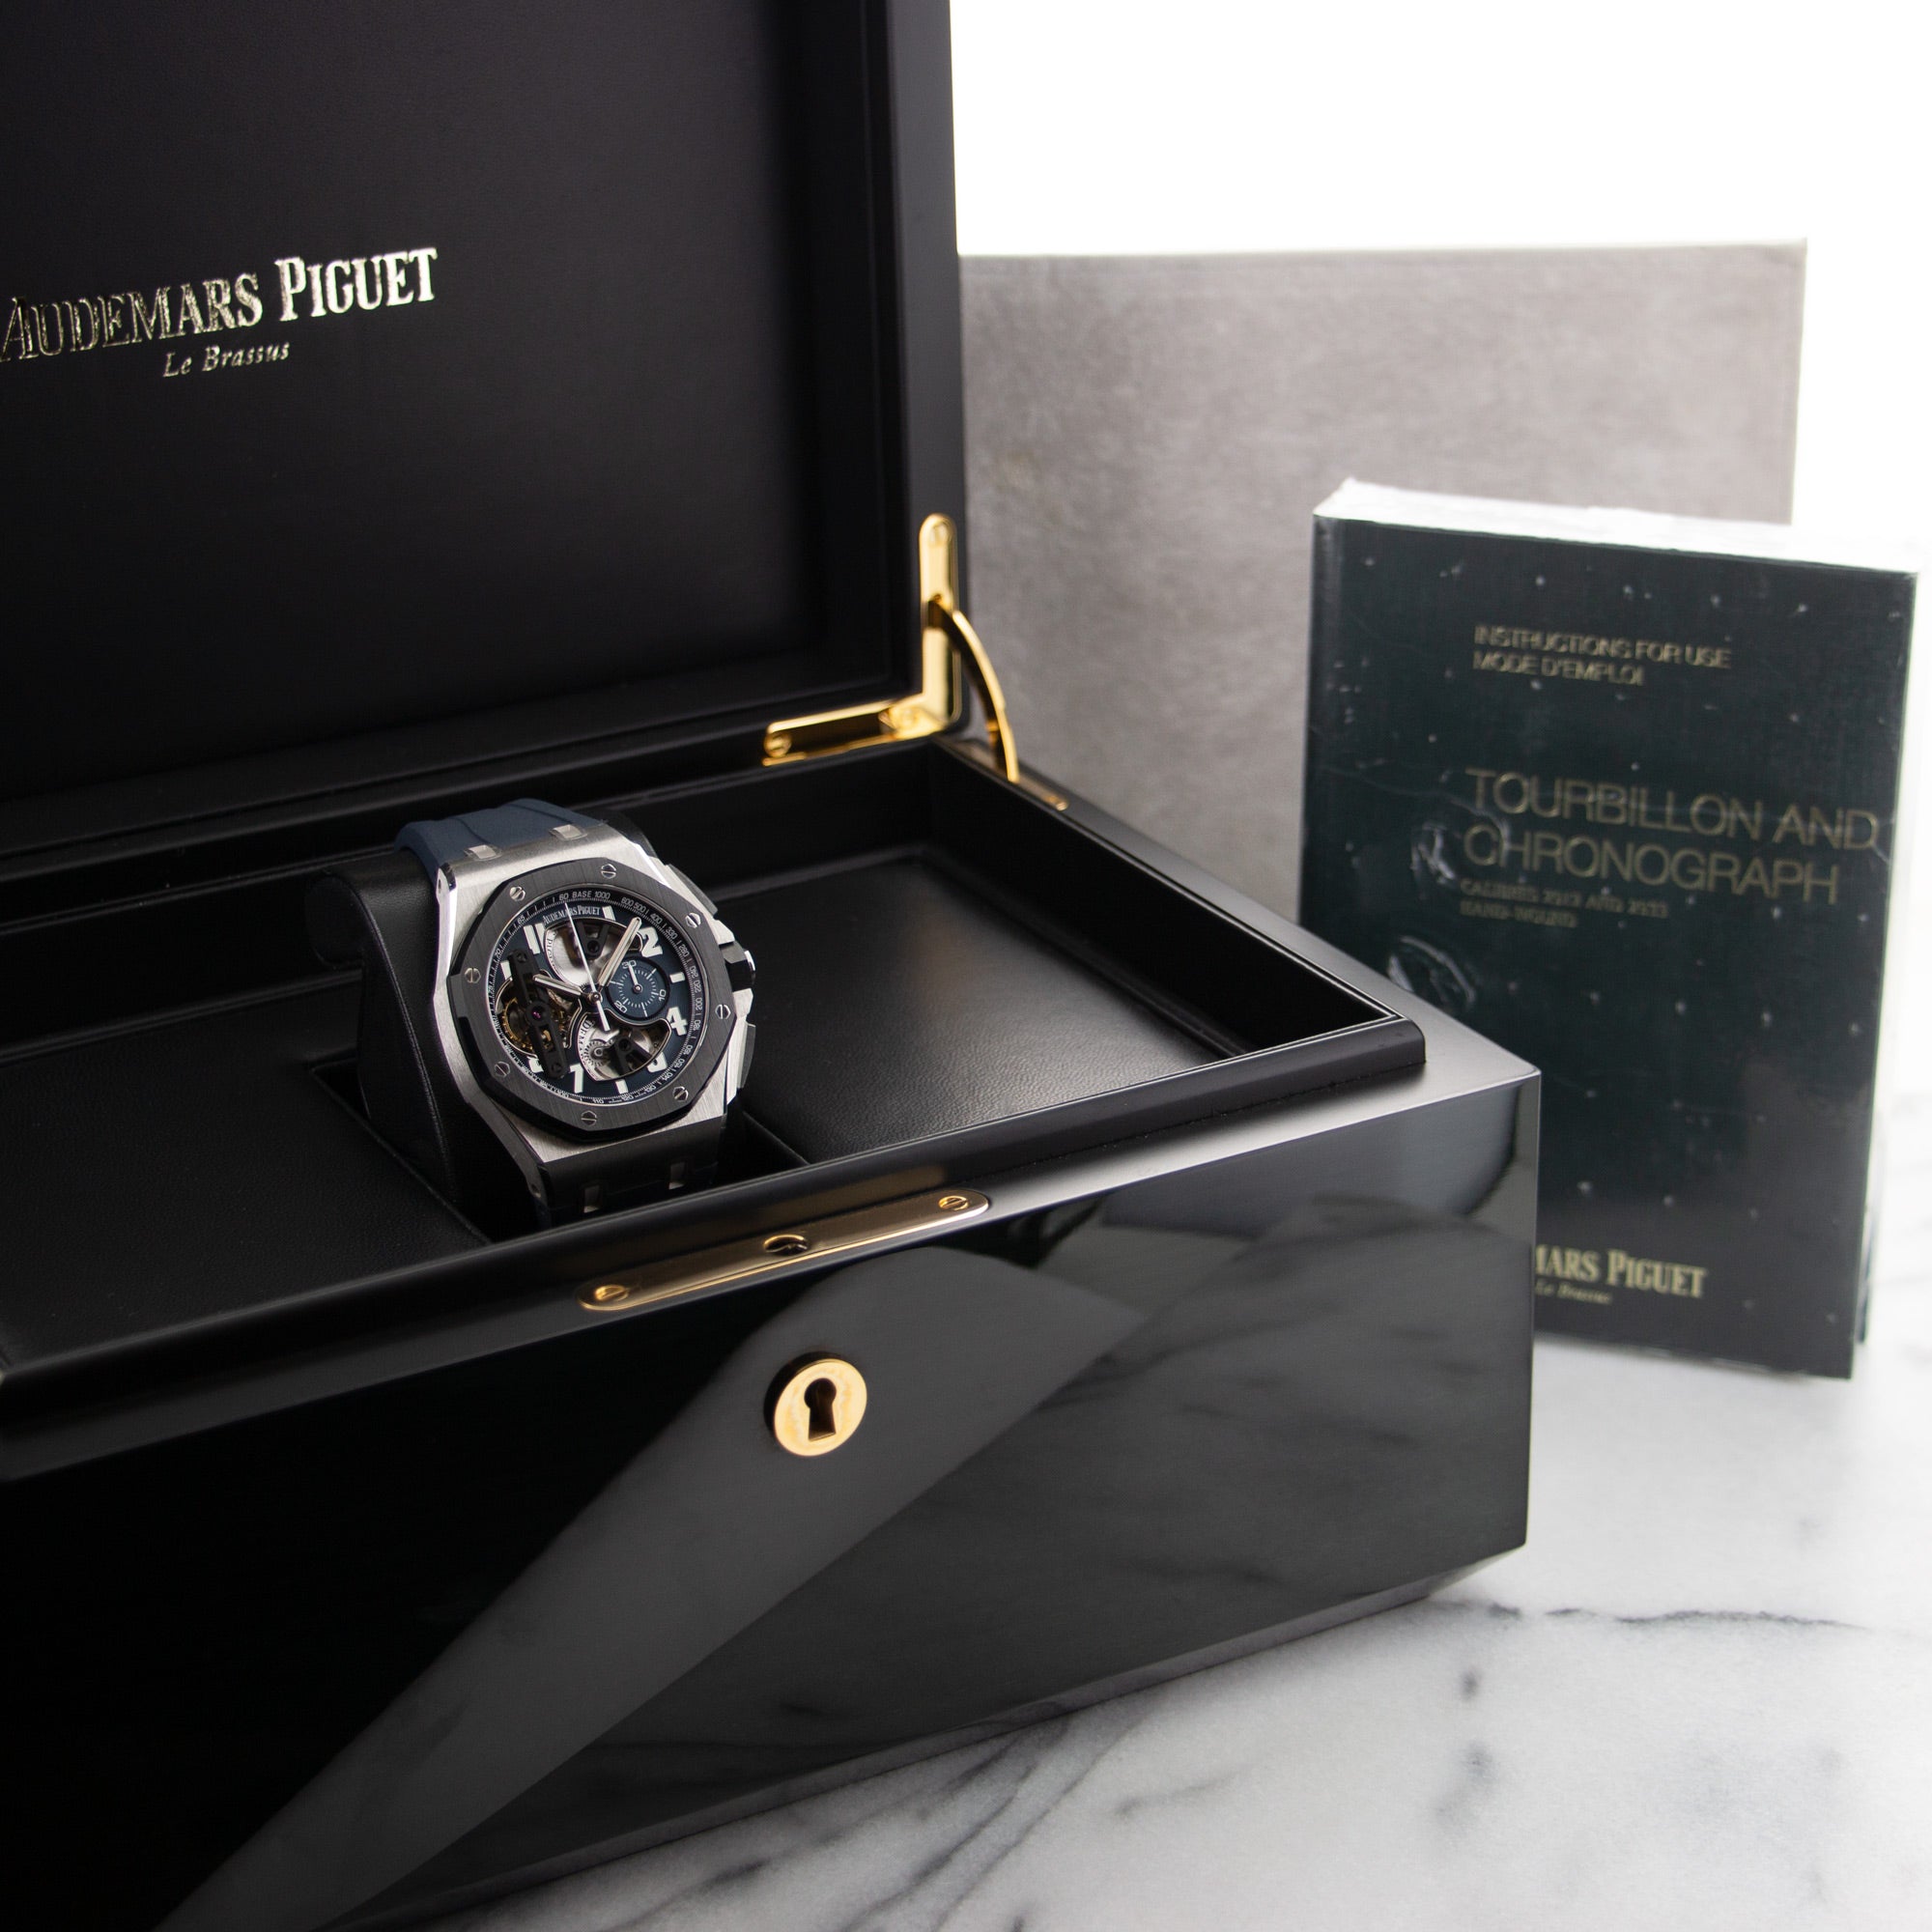 Audemars Piguet - Audemars Piguet Platinum Royal Oak Offshore Tourbillon Watch Ref. 26388 - The Keystone Watches